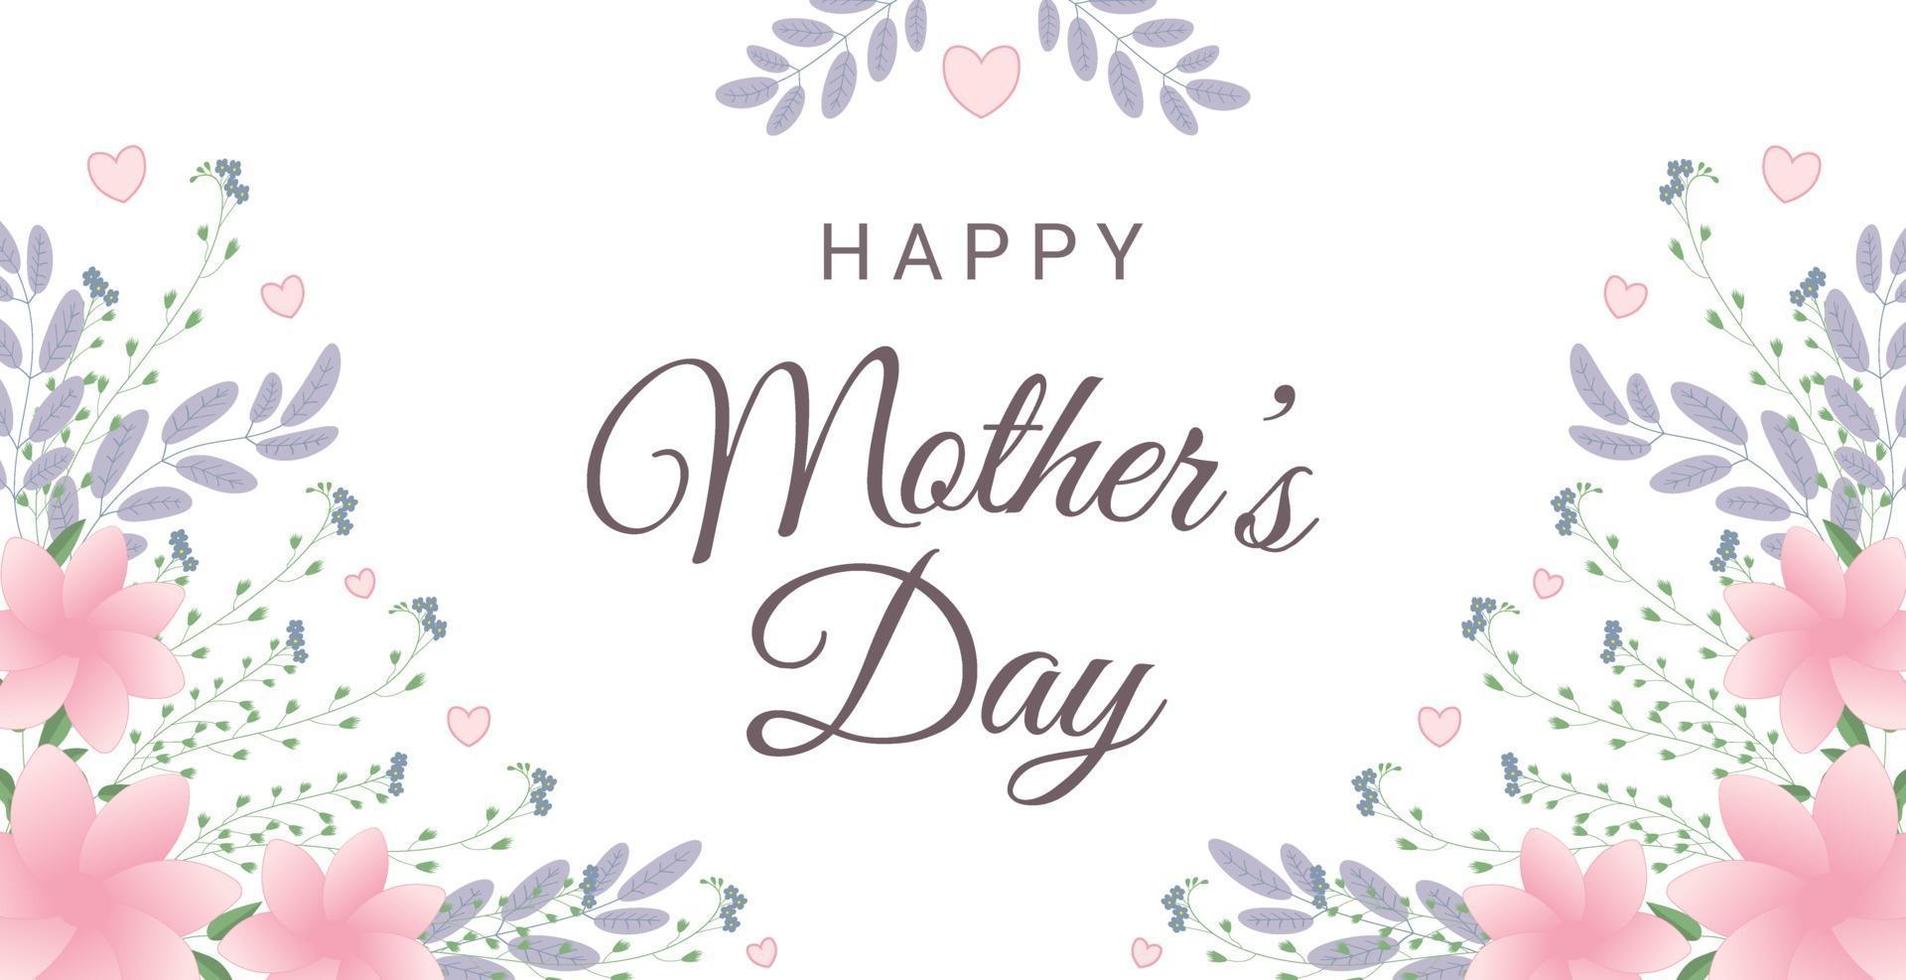 tarjeta de felicitación del día de la madre feliz con flores y corazones. perfecto para tarjetas de felicitación, sitios web, banners o etiquetas. ilustración vectorial. vector